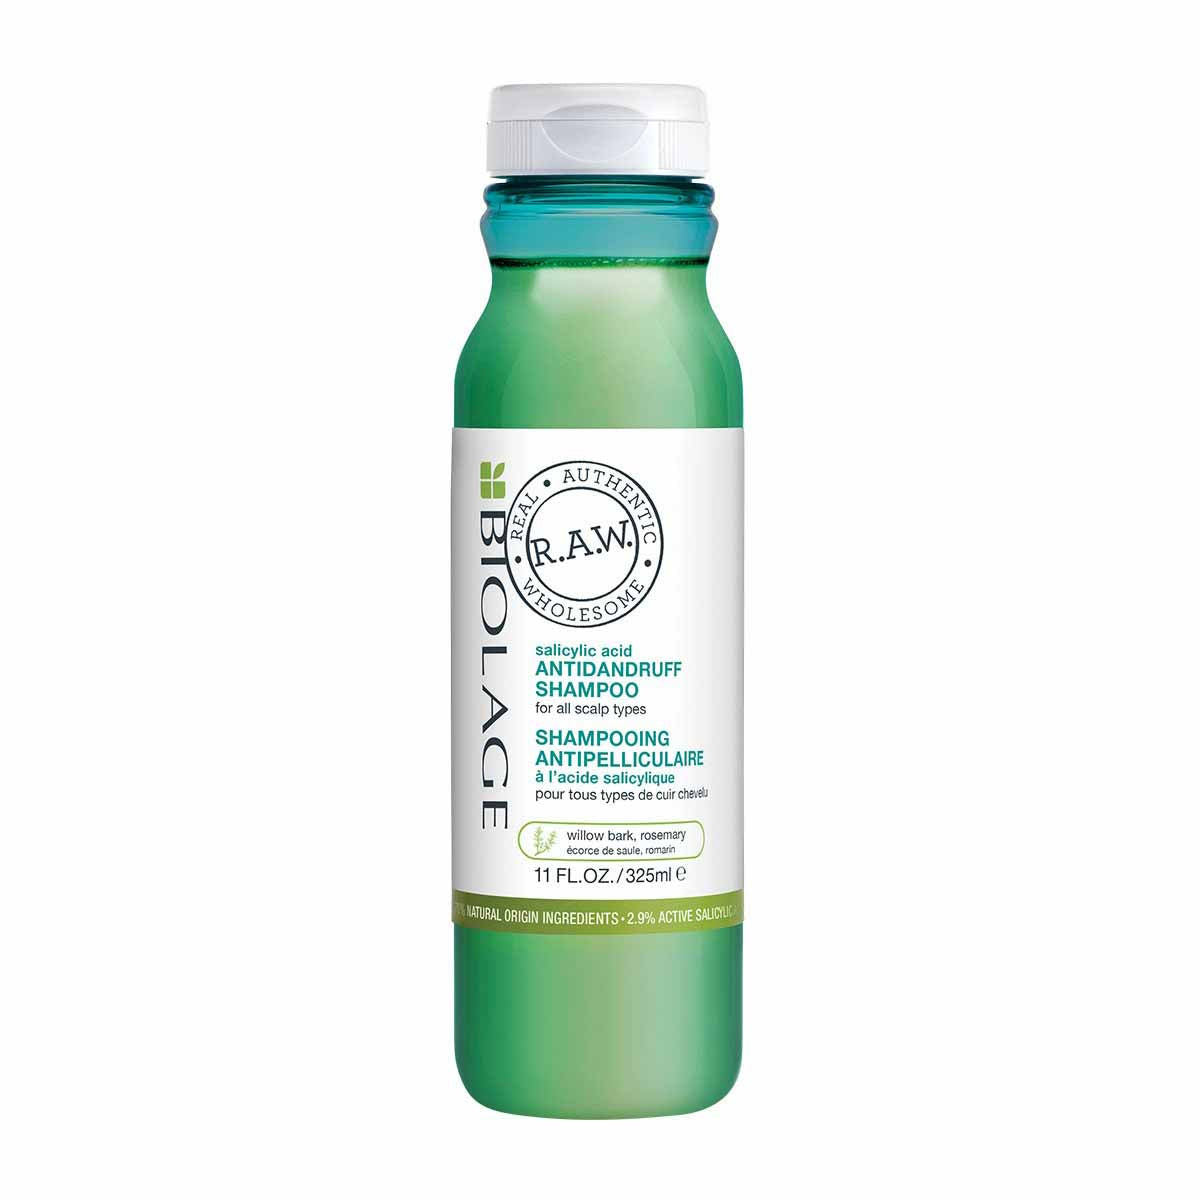 Biolage Raw Re-balance Anti-dandruff Shampoo